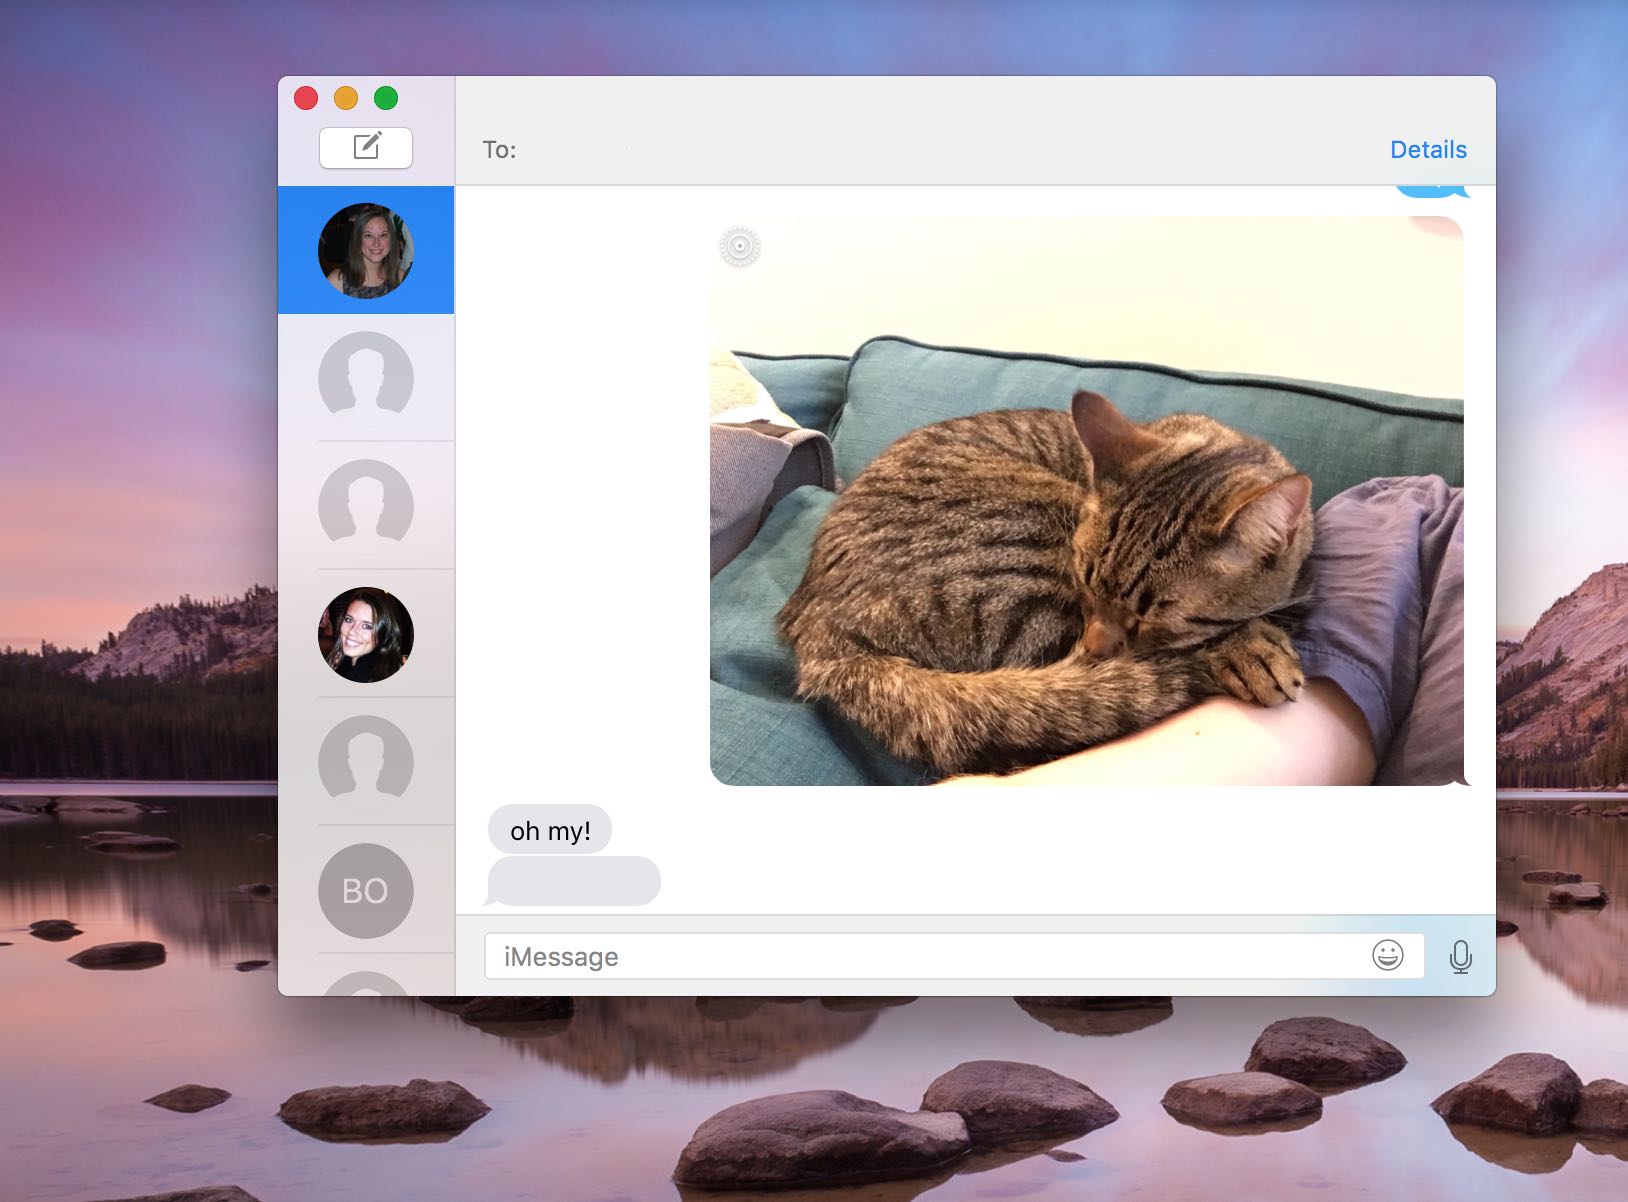 OS-X-El-Capitan-Messages-Live-Photos-Mac-screenshot-001